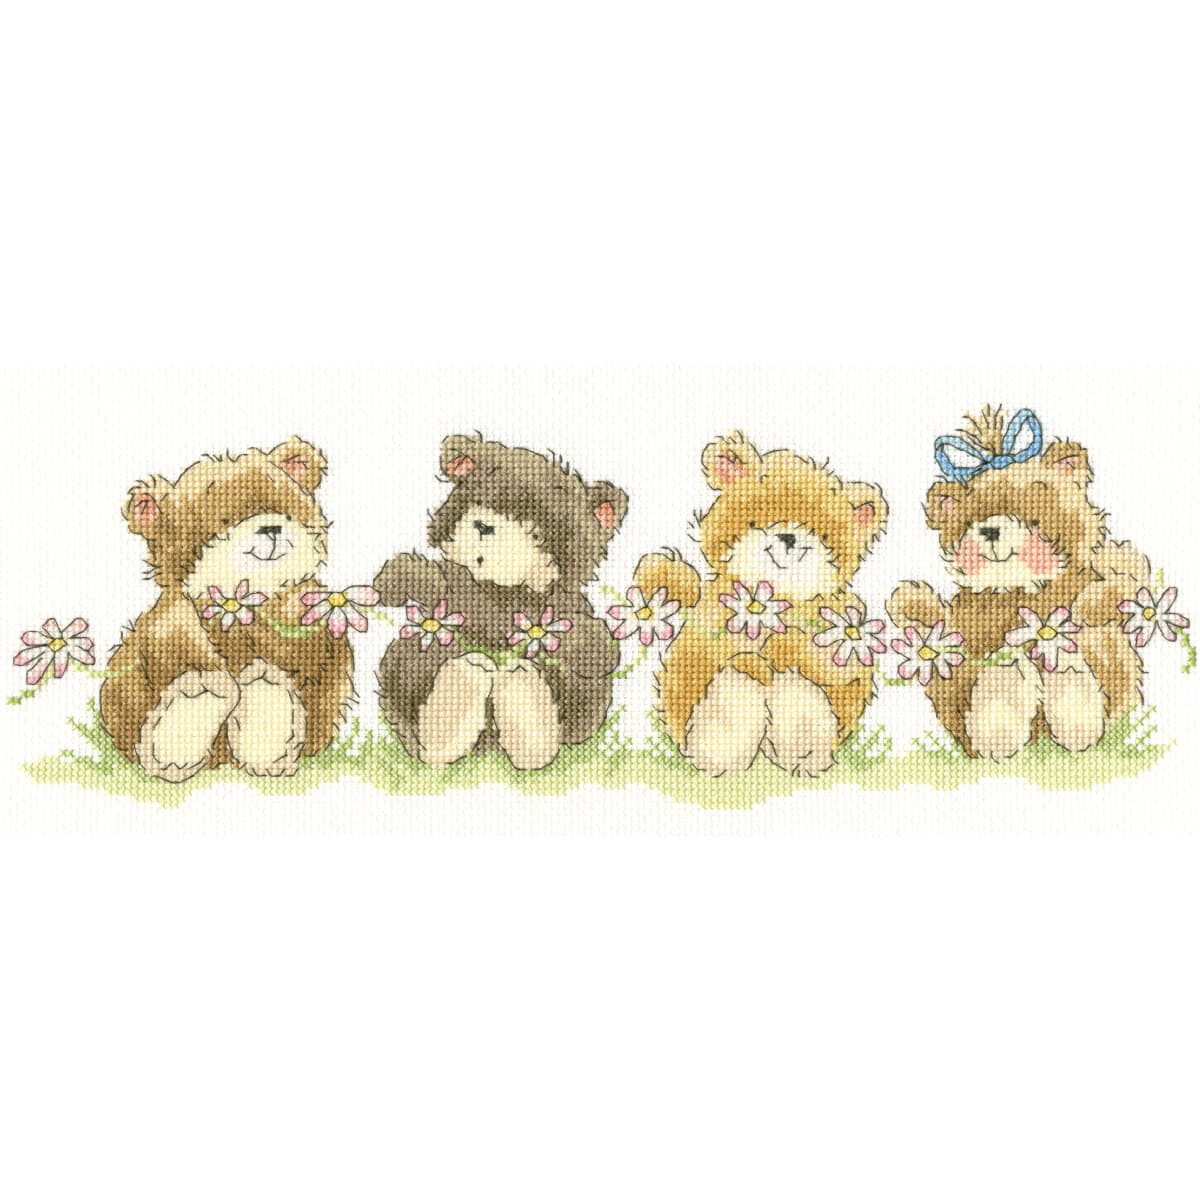 Quattro simpatici orsacchiotti sono seduti in fila,...